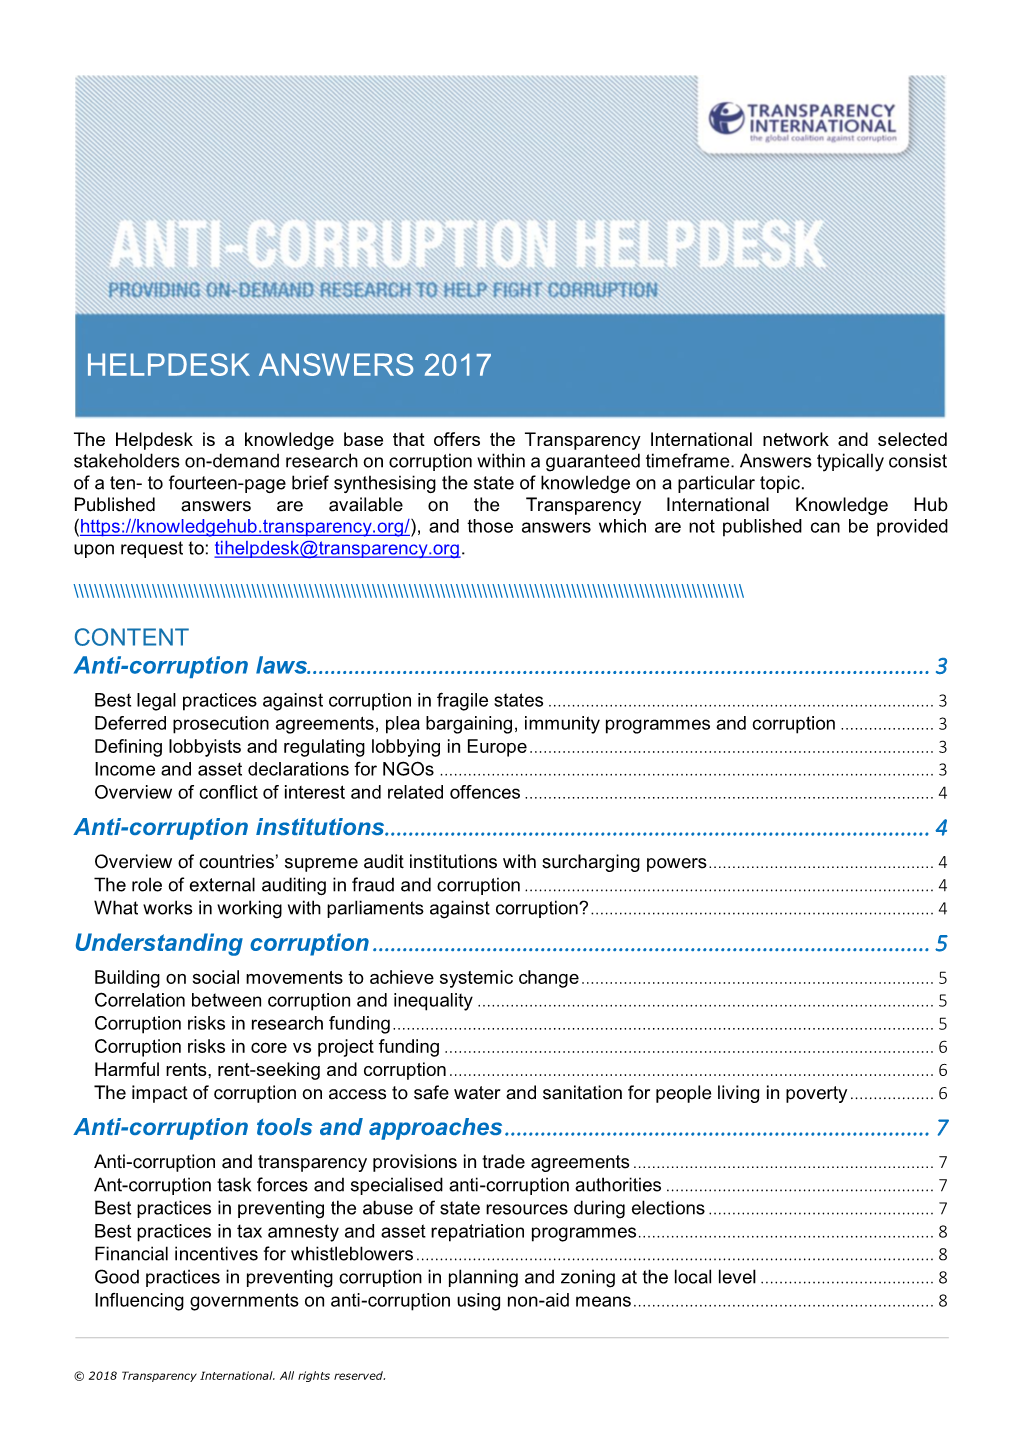 Corruption and Anti-Corruption in Sudan